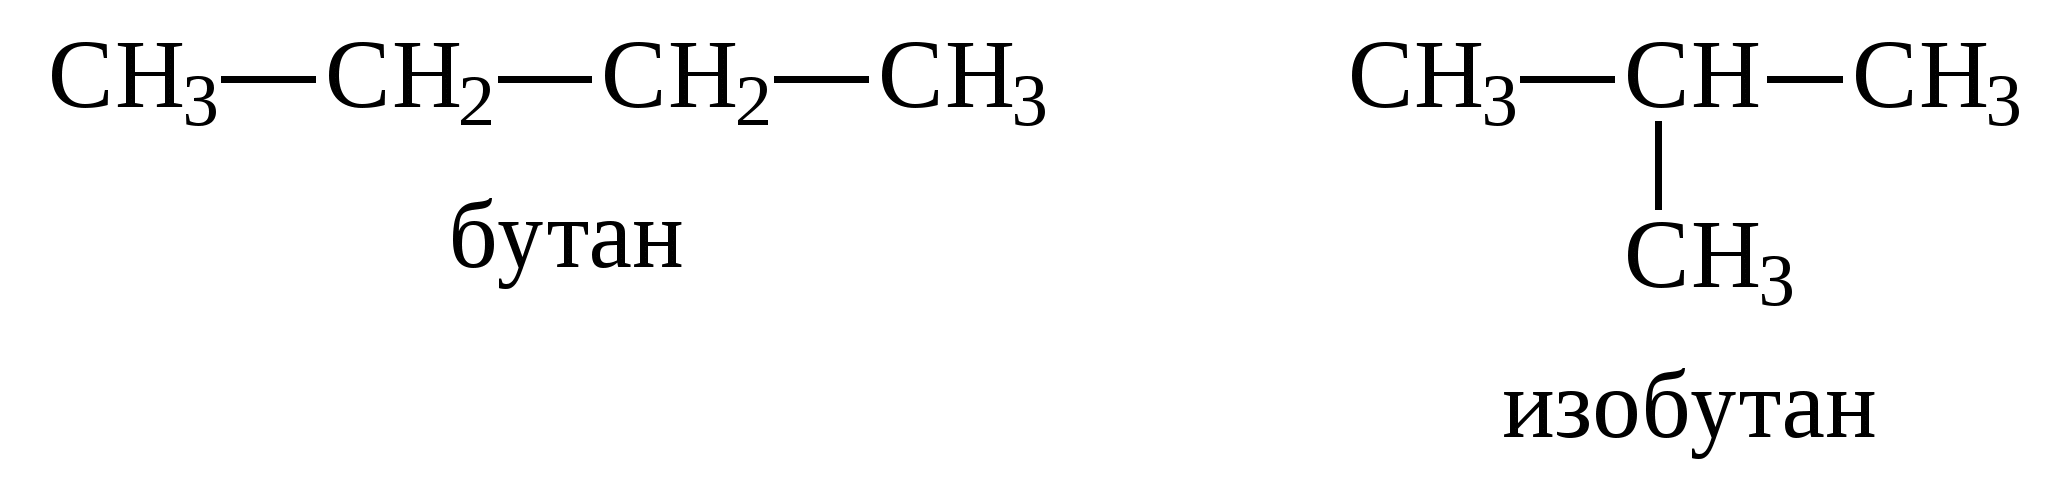 Из изобутана бутан 1. H-бутан формула. Н-бутан структурная формула. Бутан химия структурная формула. Превращение бутана в изобутан.